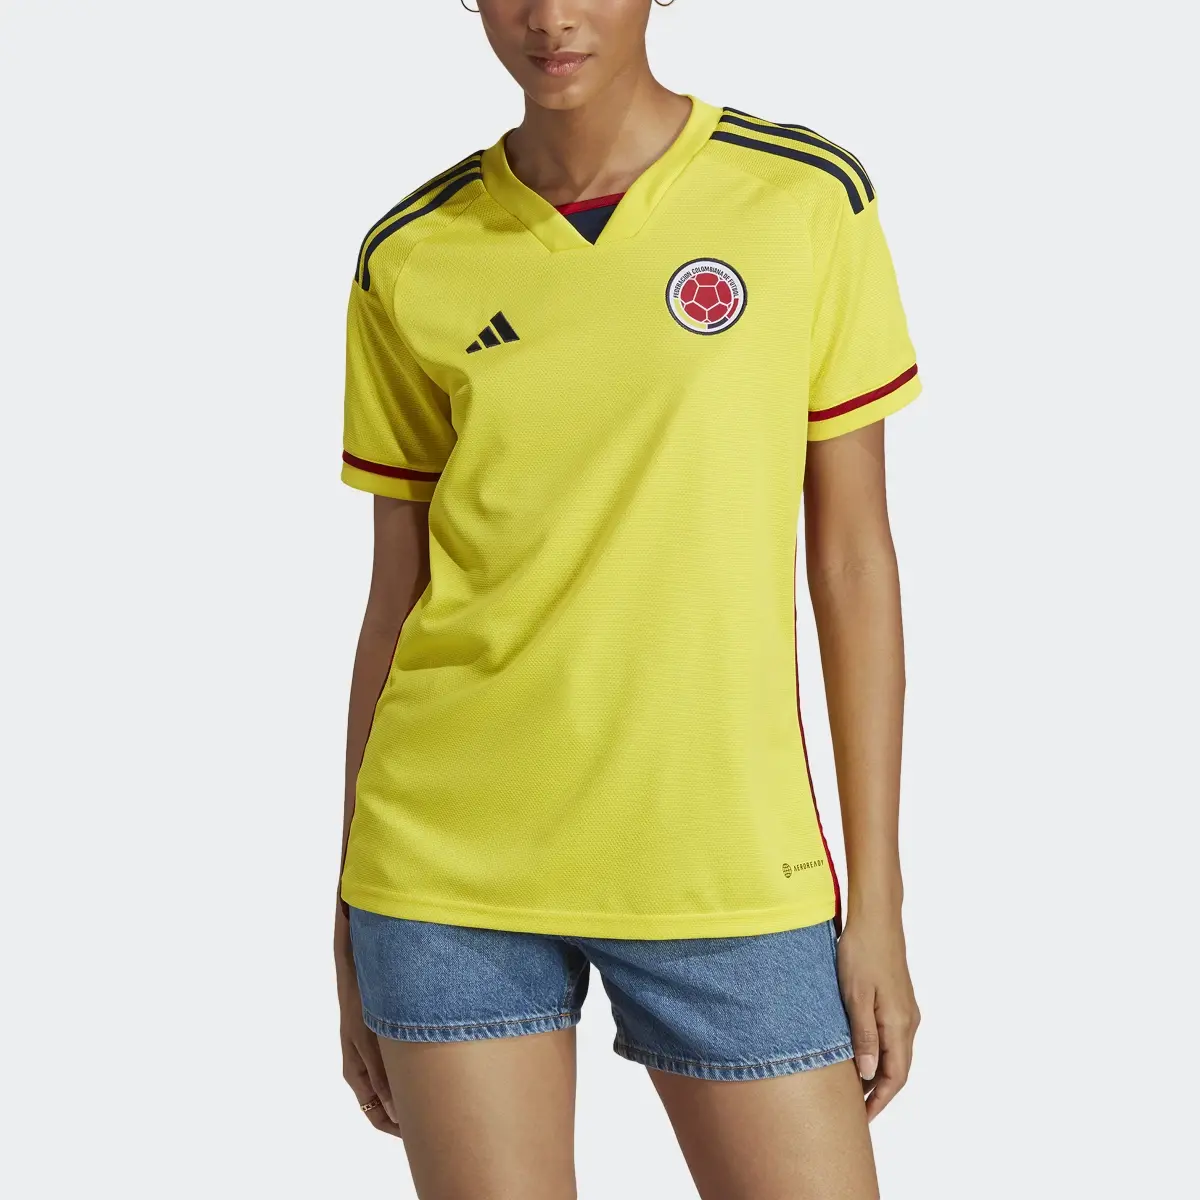 Adidas Jersey Uniforme de Local Selección Colombia 22. 1